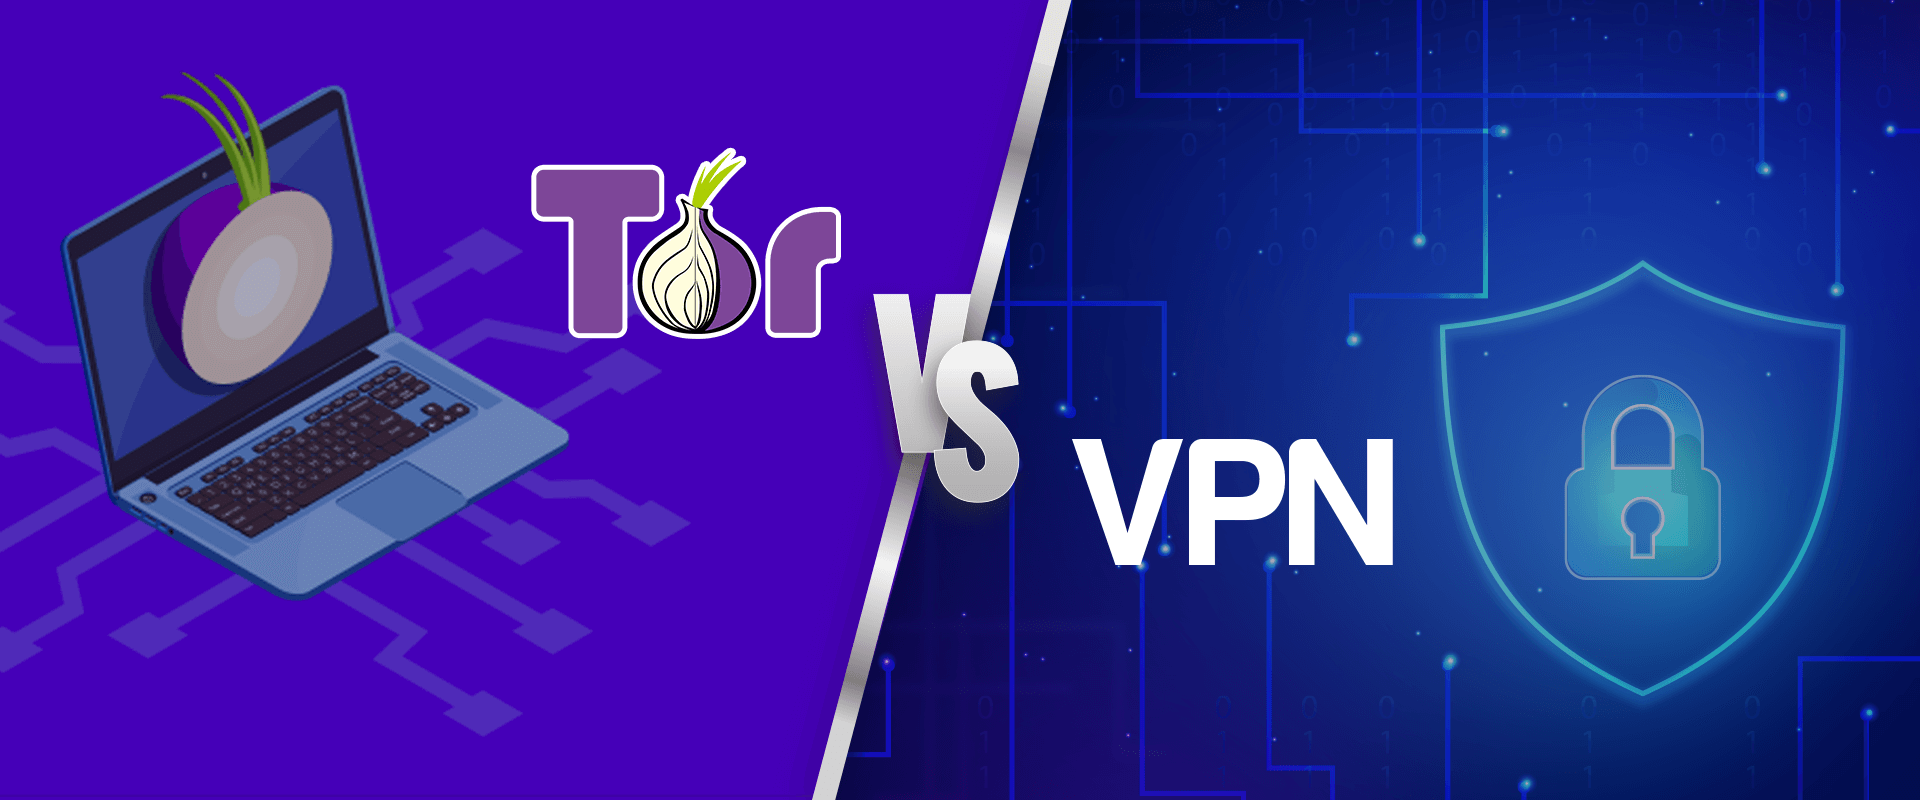 Tor vpn что это darknet как зайти вход на мегу